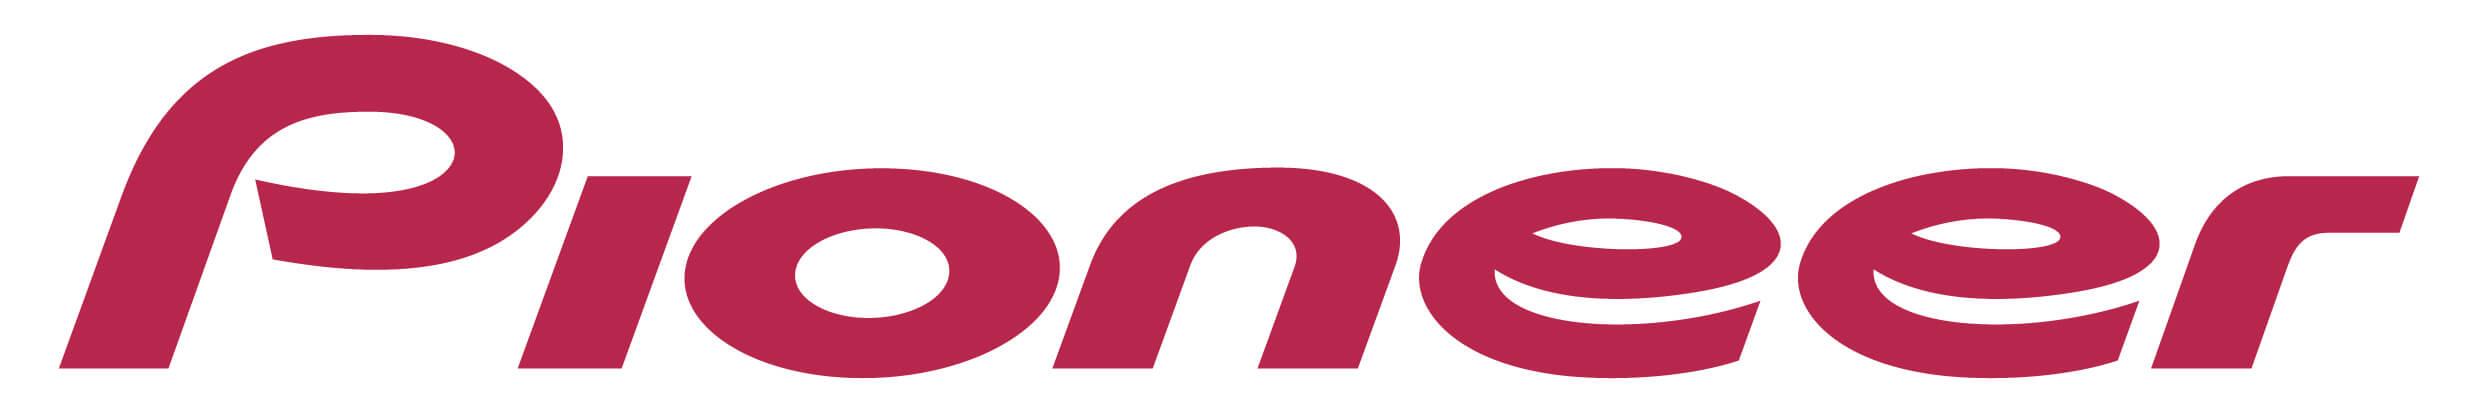 Car Entertainment Logo - Pioneer. Pioneer Car Audio, Video, Amplifiers, Speakers, Sub